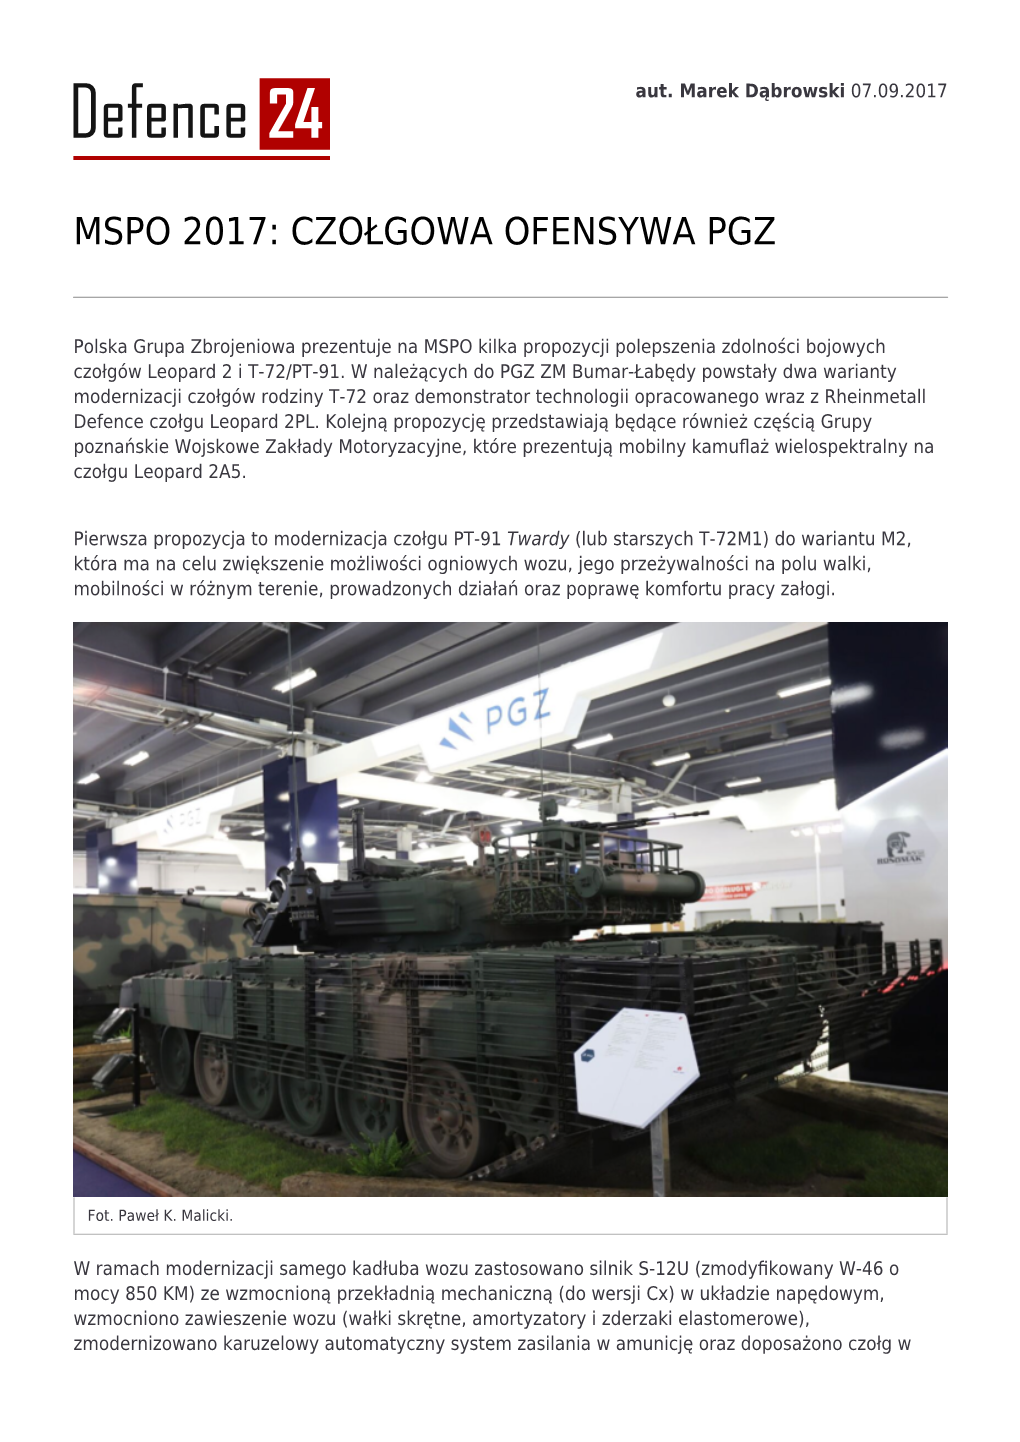 Mspo 2017: Czołgowa Ofensywa Pgz